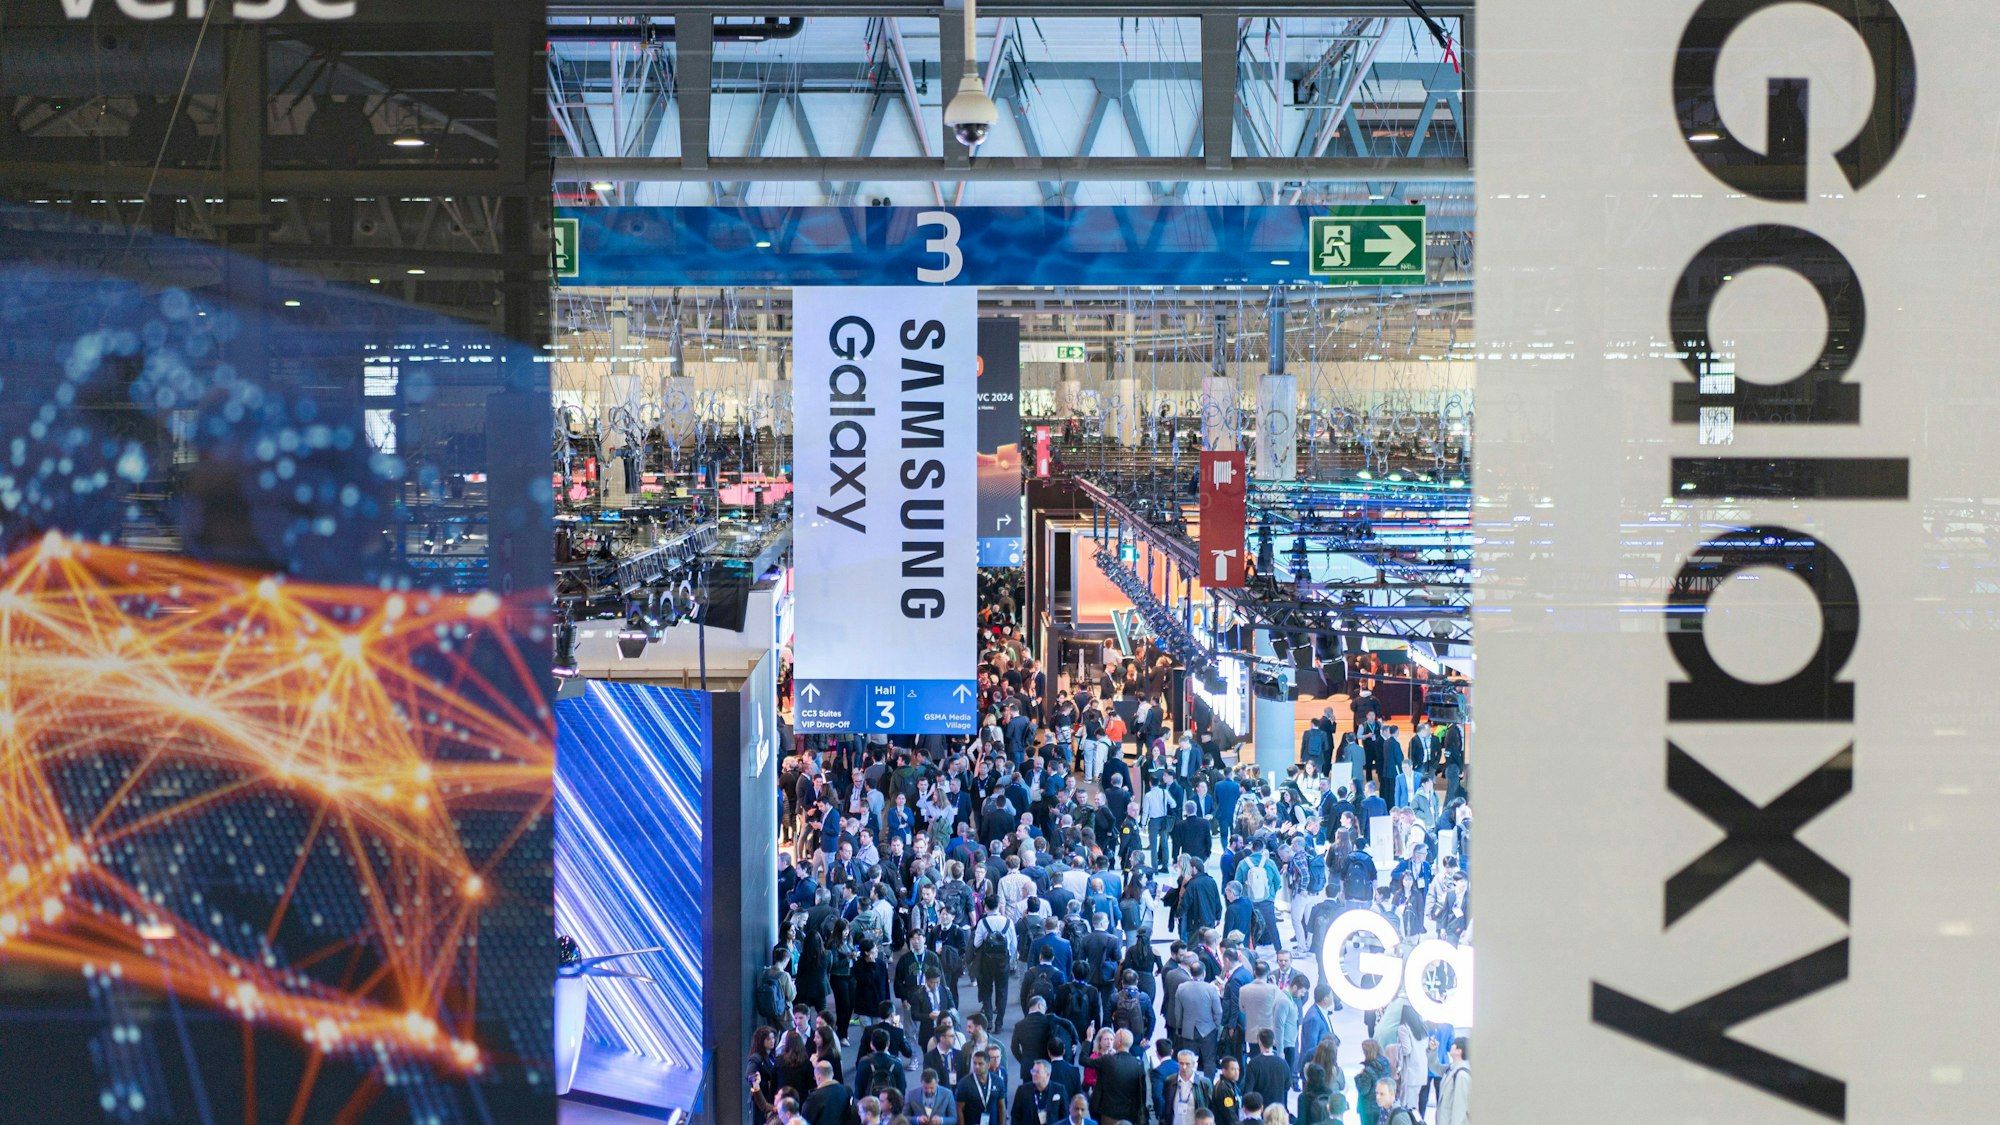 Besucher gehen durch die Messehalle auf der europäischen Mobilfunkmesse Mobile World Congress (MWC), im Vorgrund sind Schilder von Samsung Galaxy zu sehen.